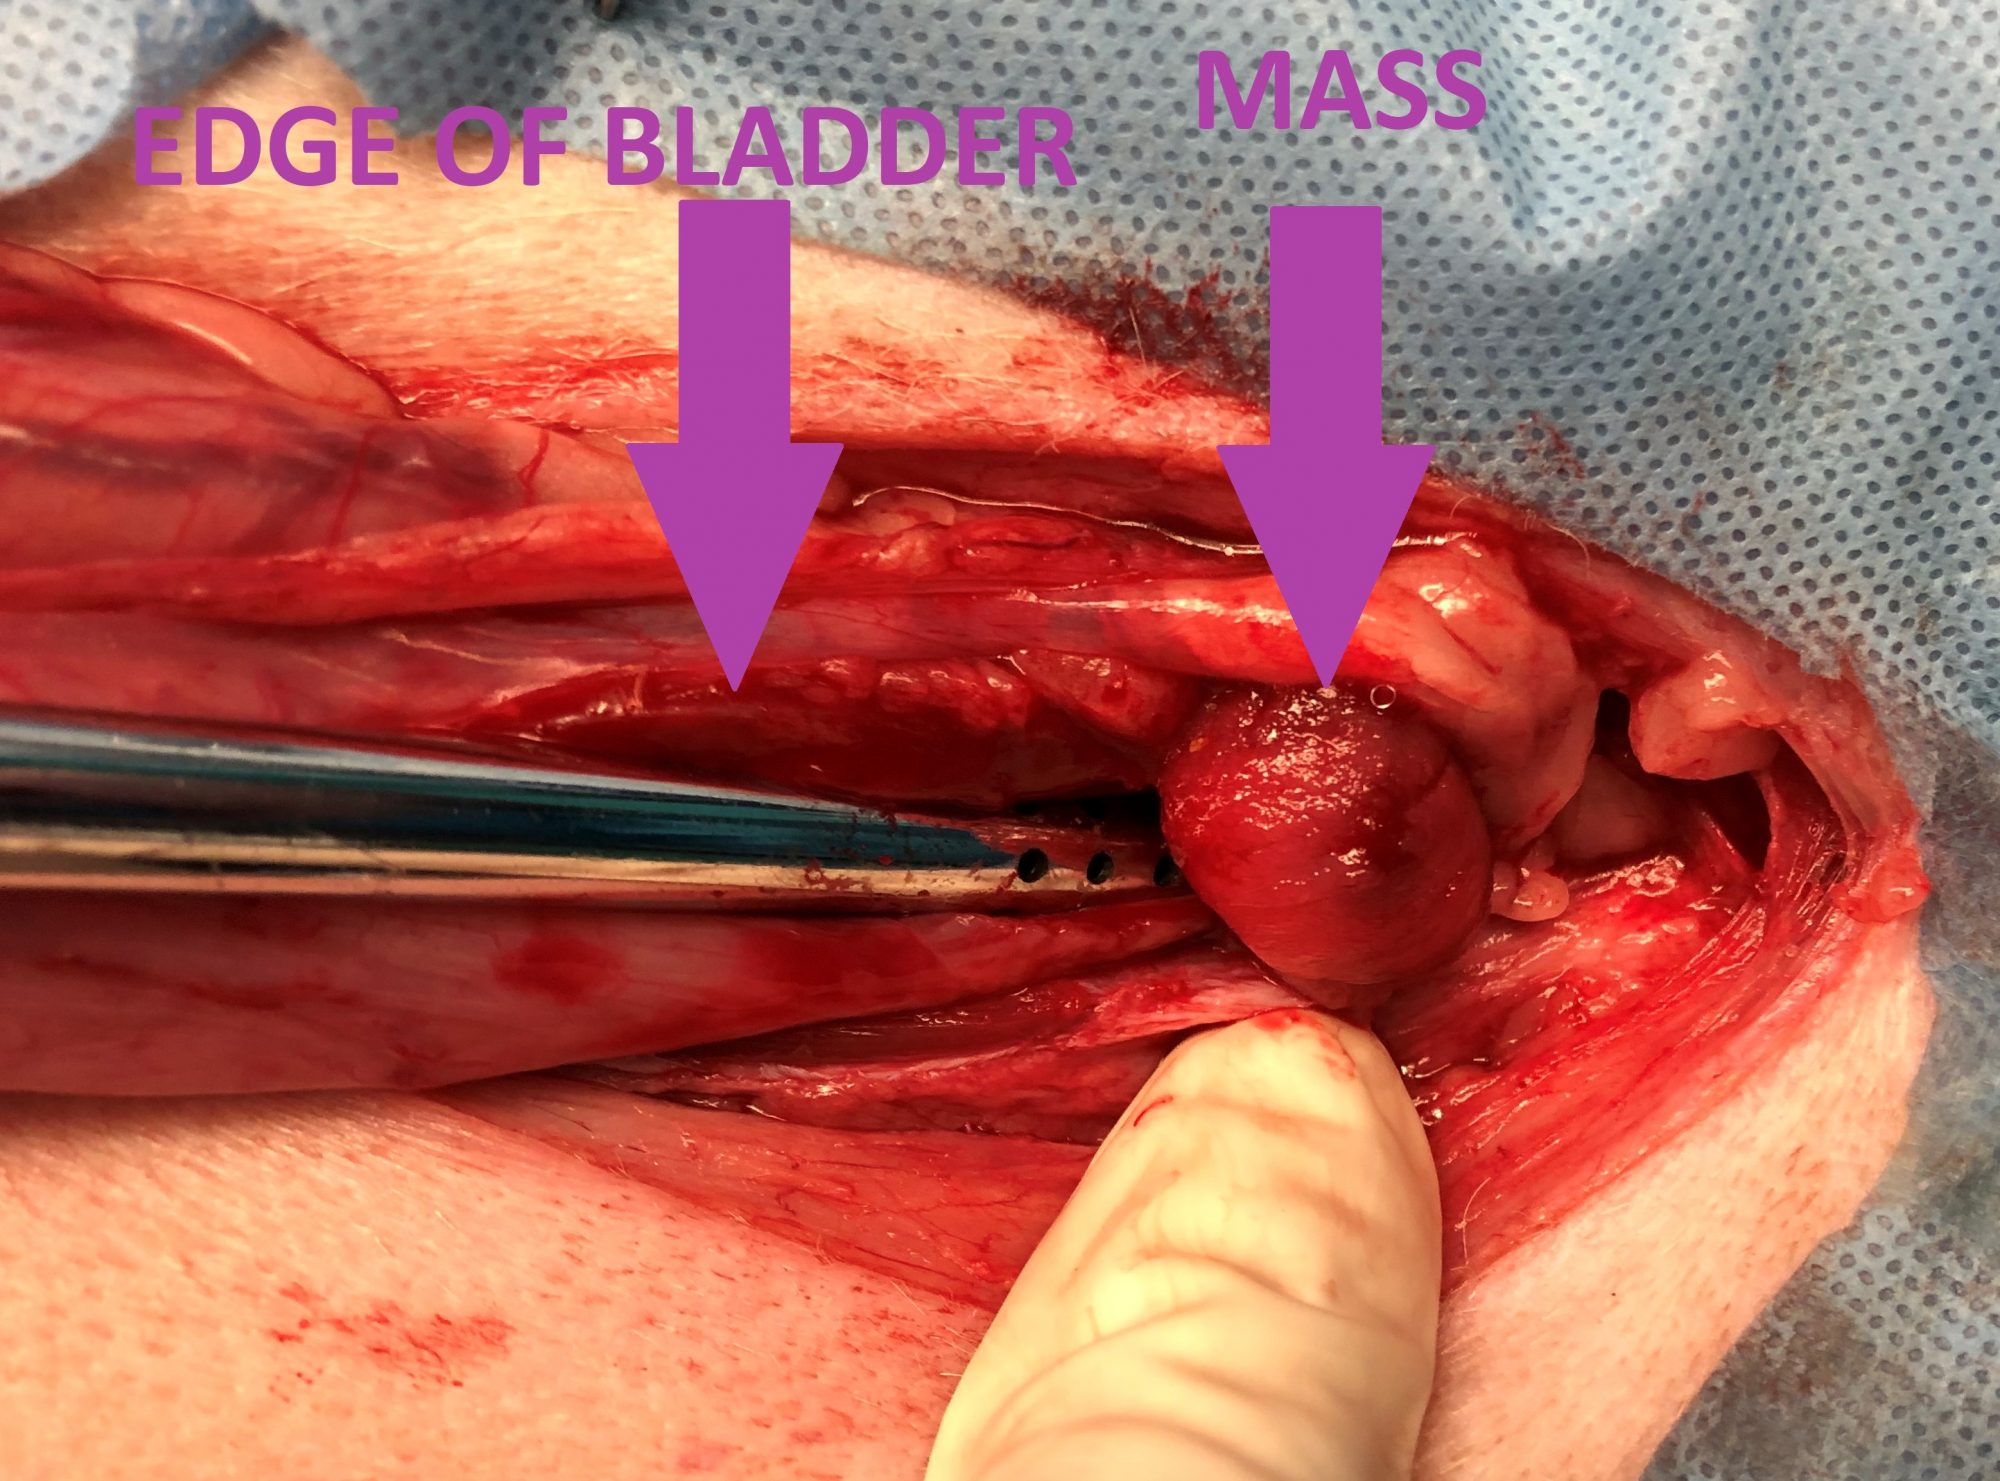 A mass blocking the bladder